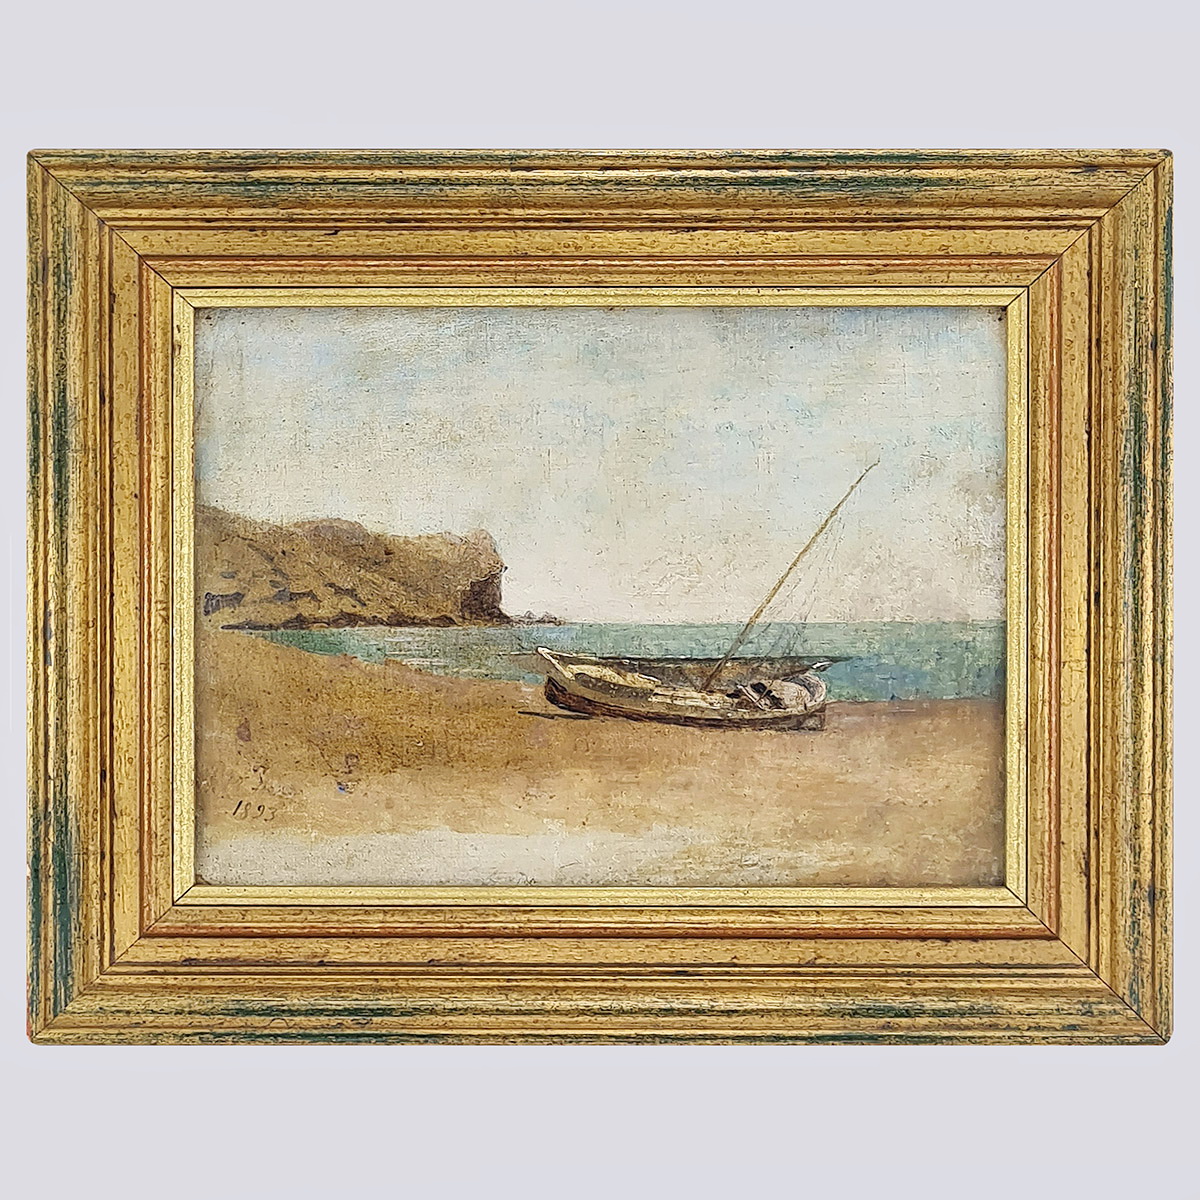 Картина «Баркас» 1893 г., холст, масло